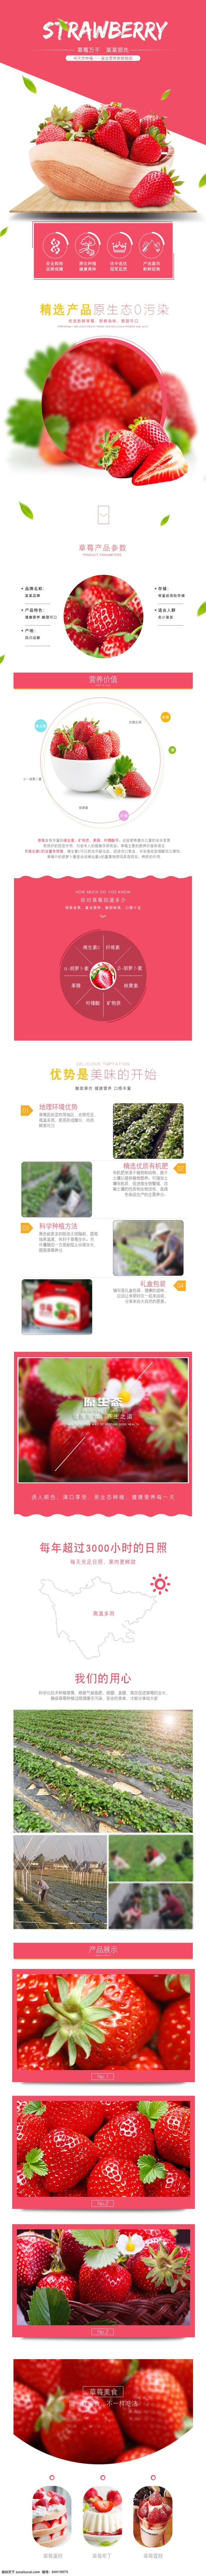 电商 淘宝 草莓 详情 页 详情页 红色 美食 草莓详情页 水果